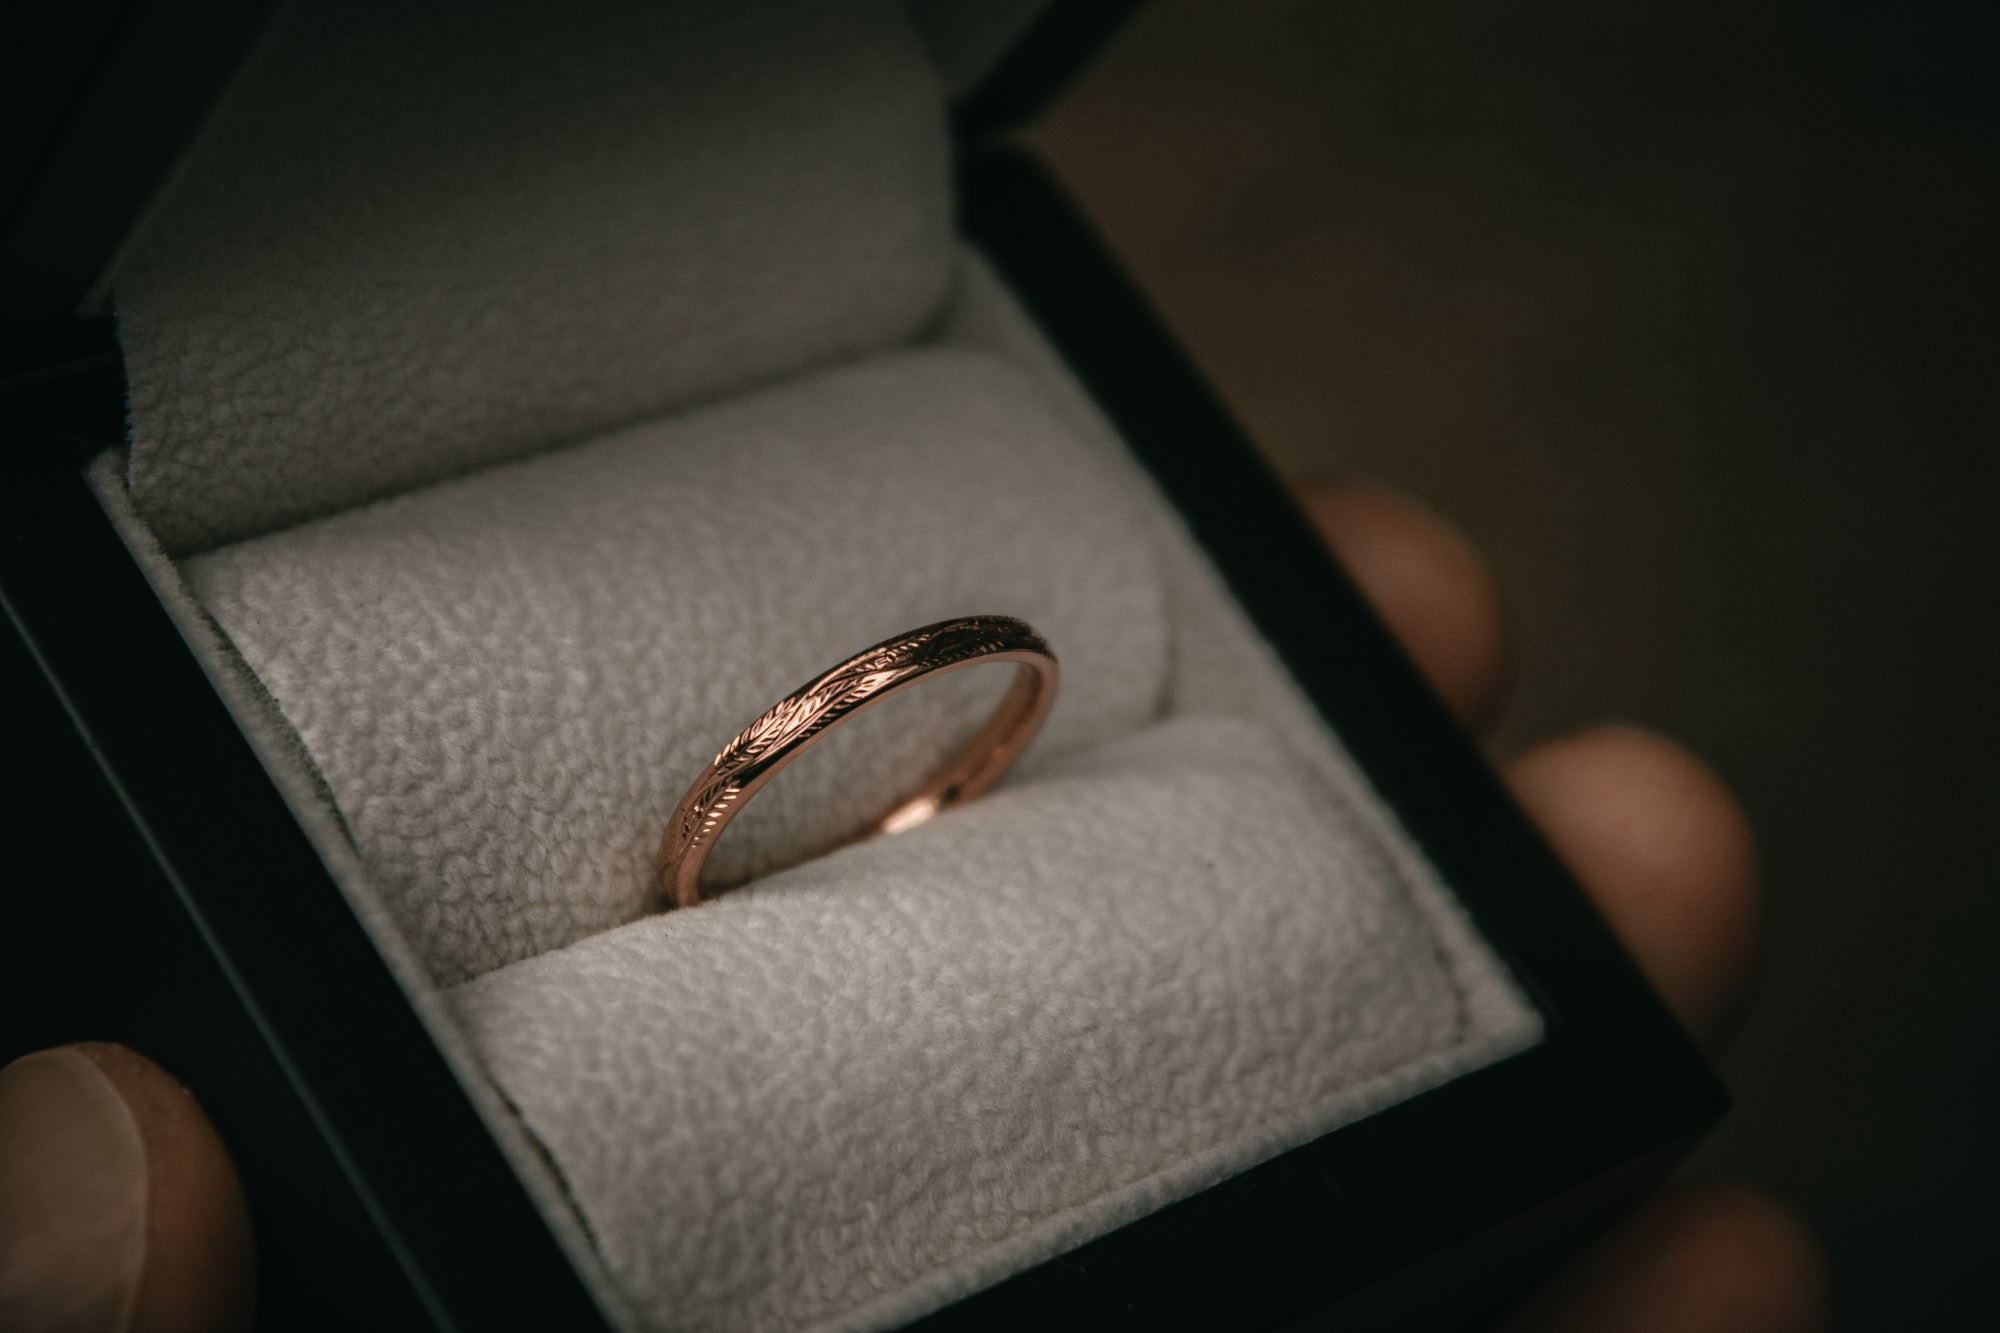 Bespoke rose gold wedding ring